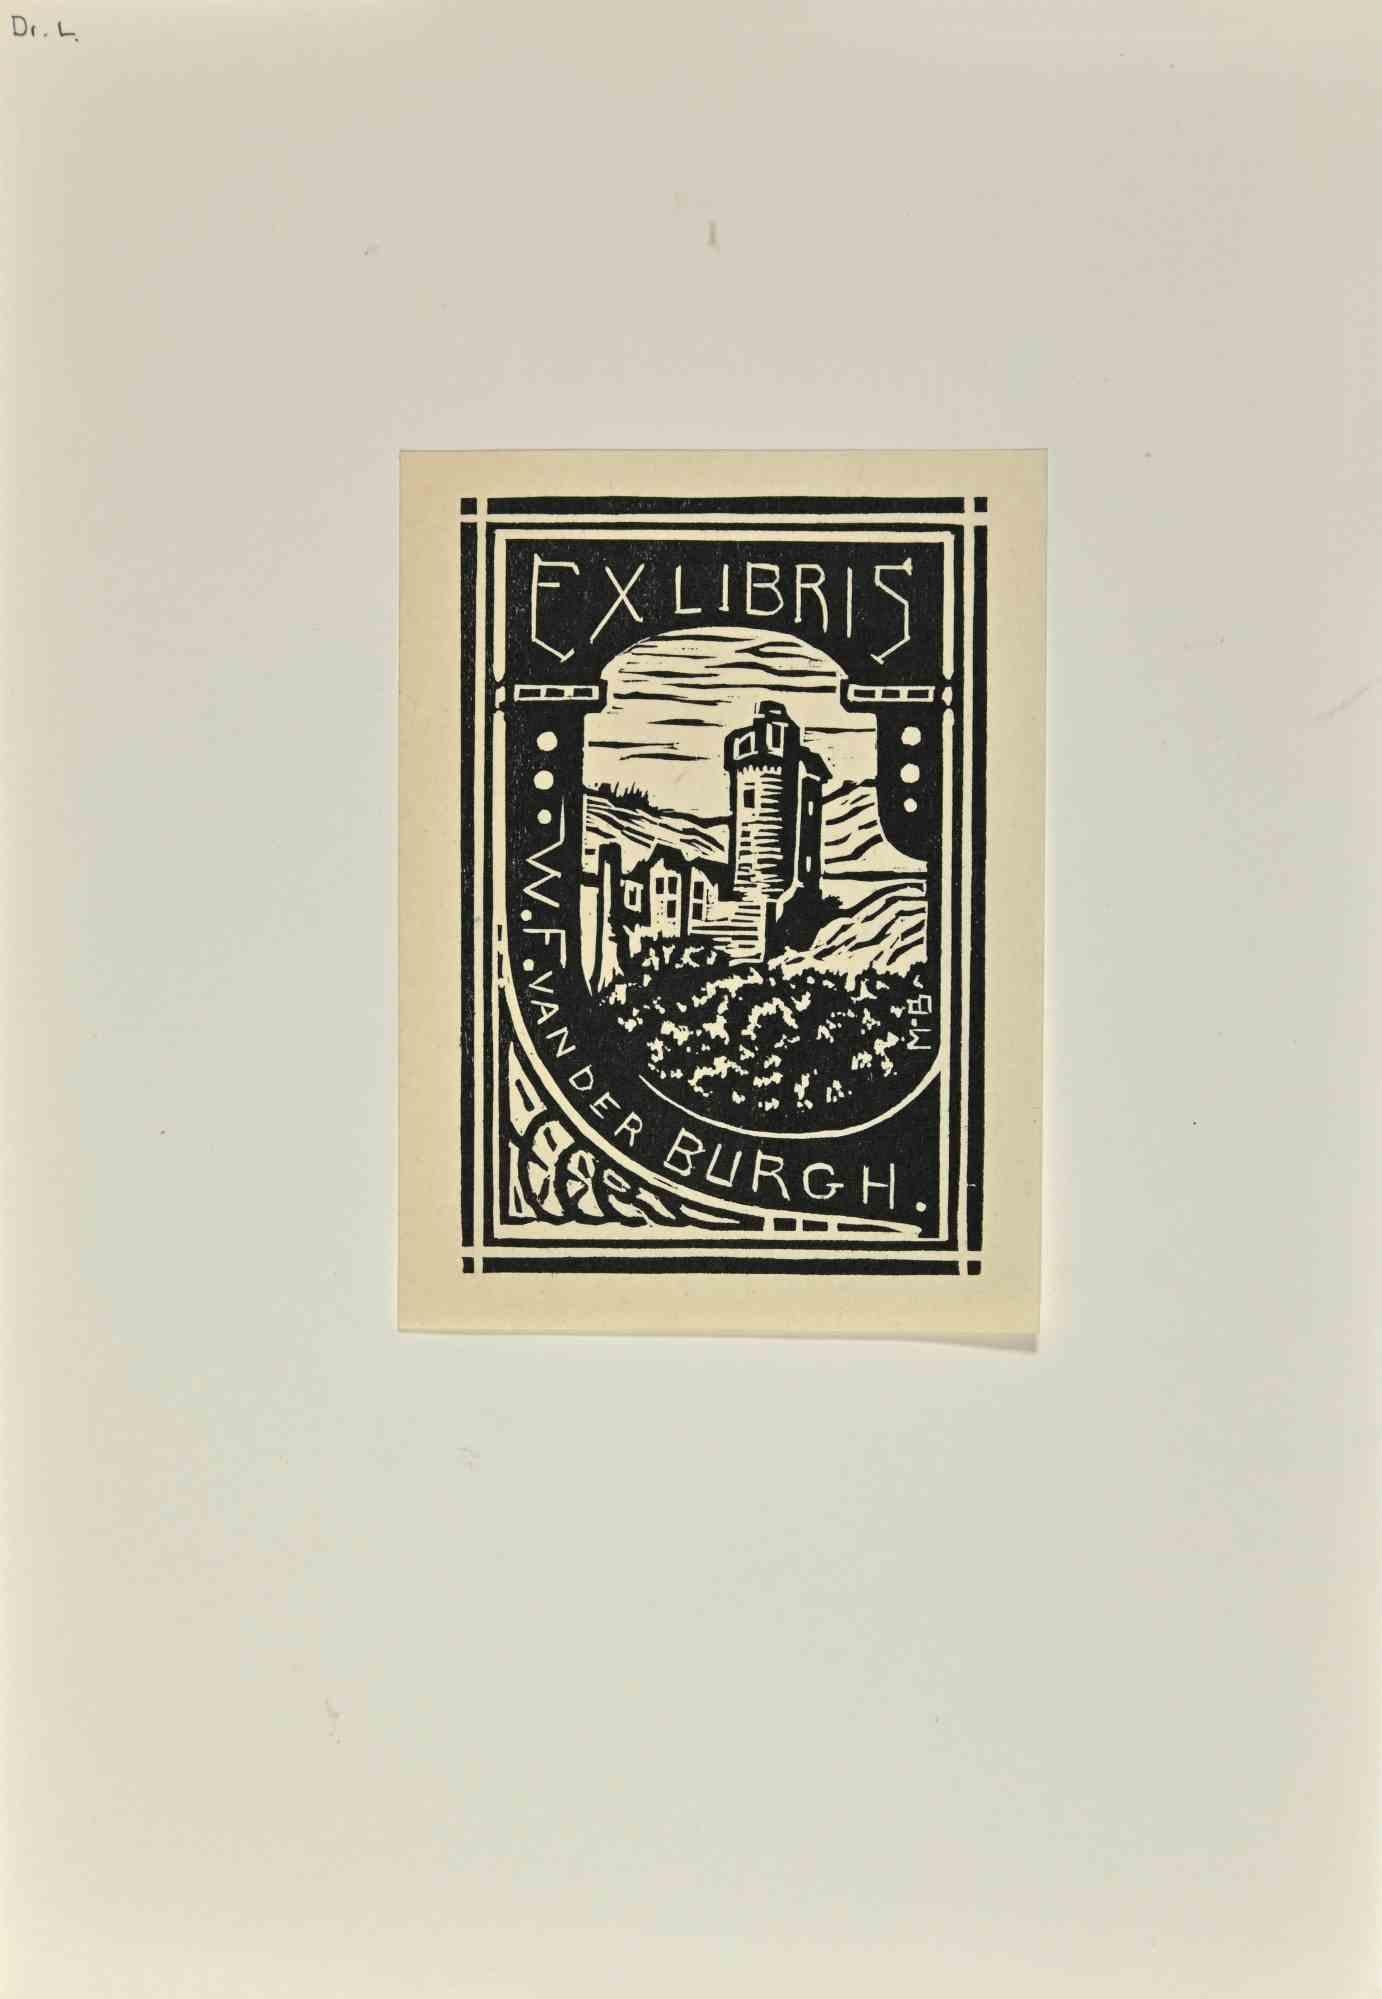  Ex Libris -Vander Burgh - Gravure sur bois - Milieu du 20e siècle